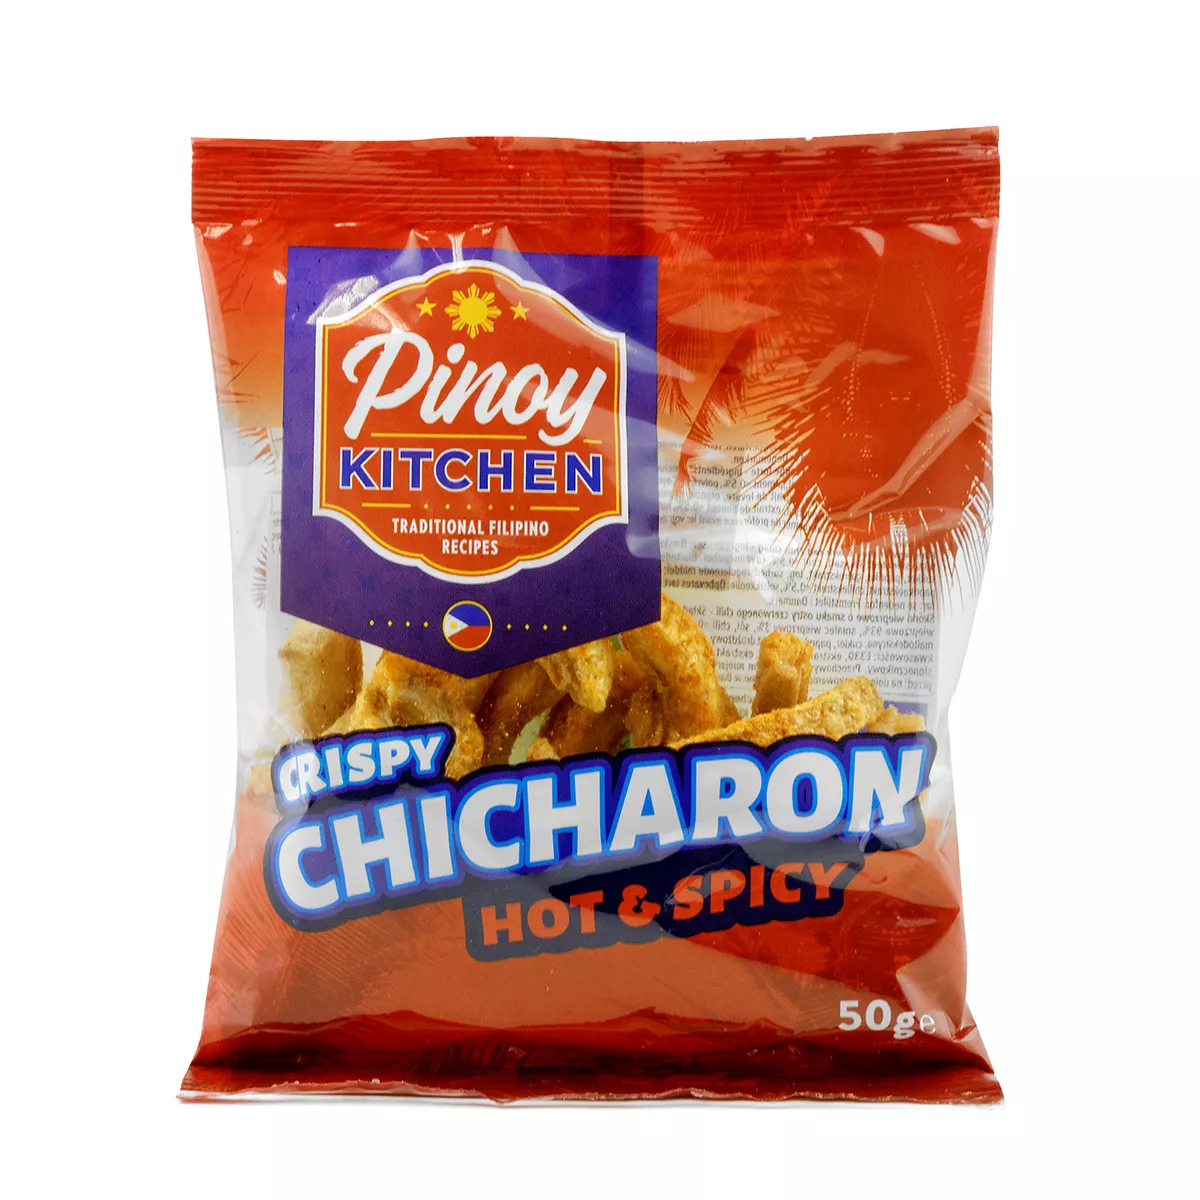 Chicharon Hot & Spicy PINOY KITCHEN 50g, [],asianfood.ro